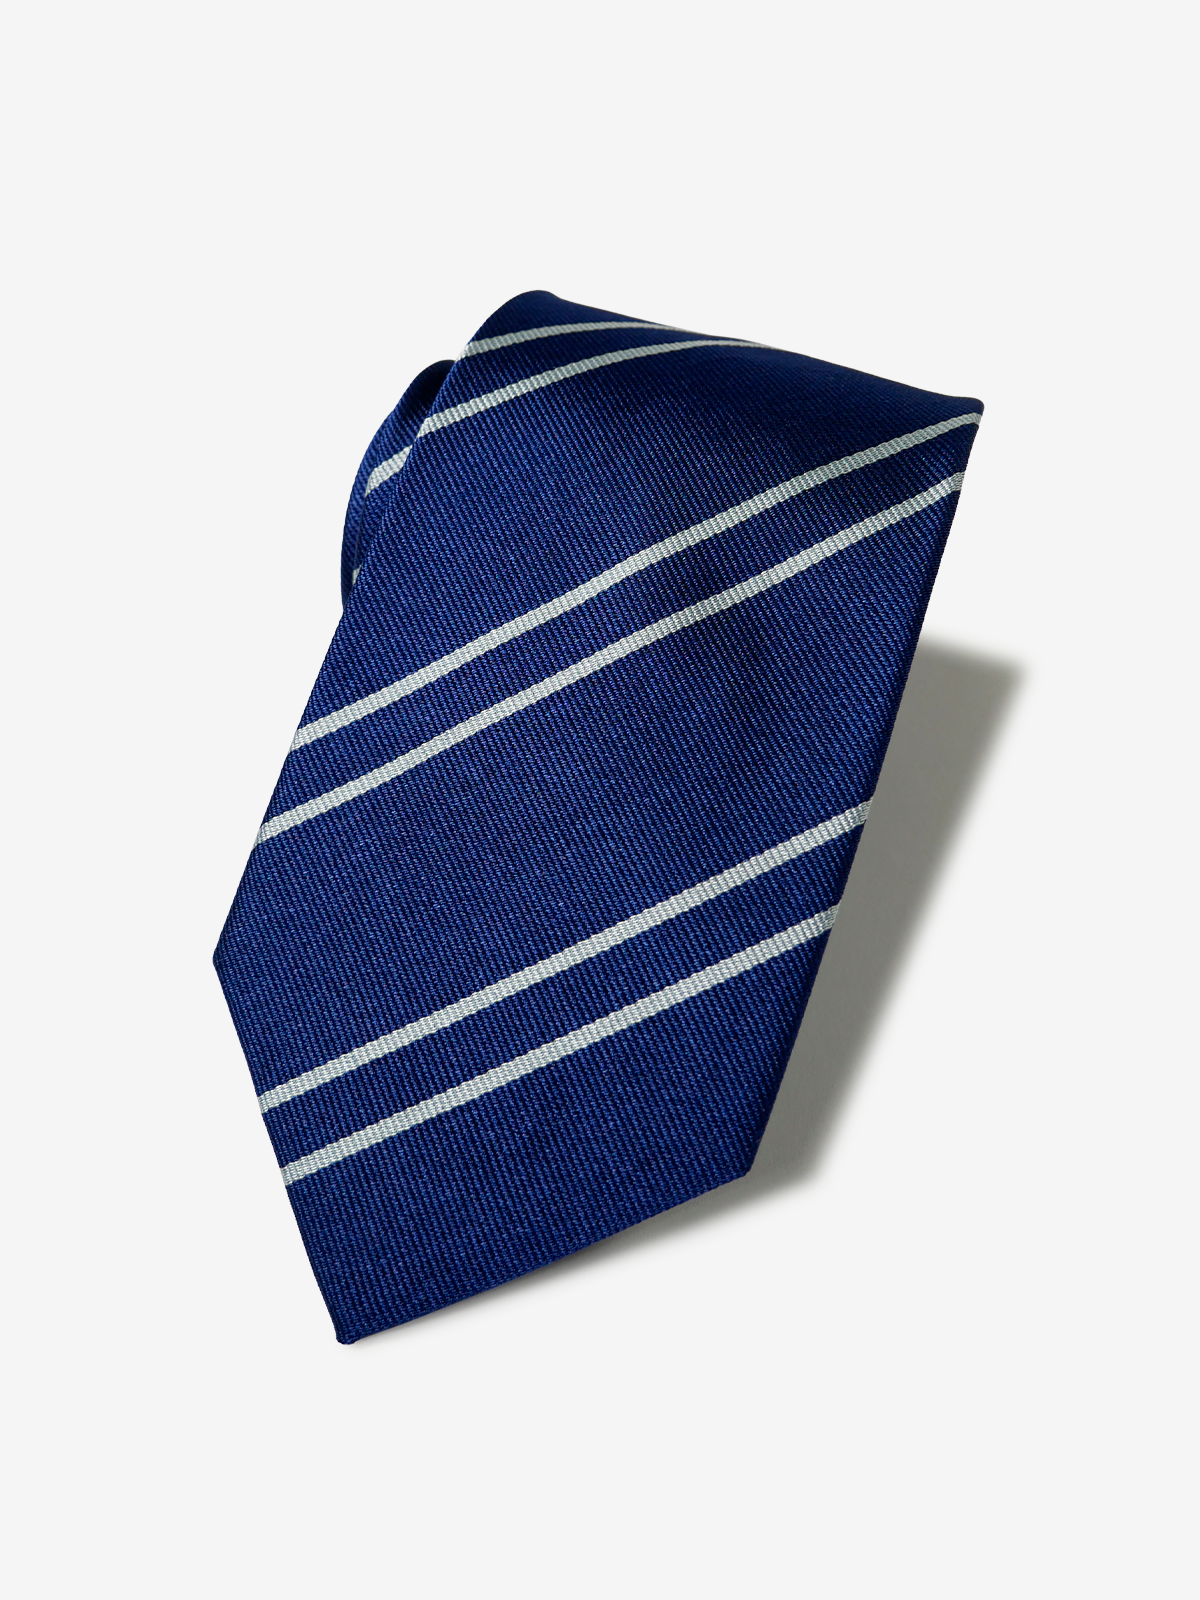 VANNERS｜Regimental Striped Necktie｜ブルー